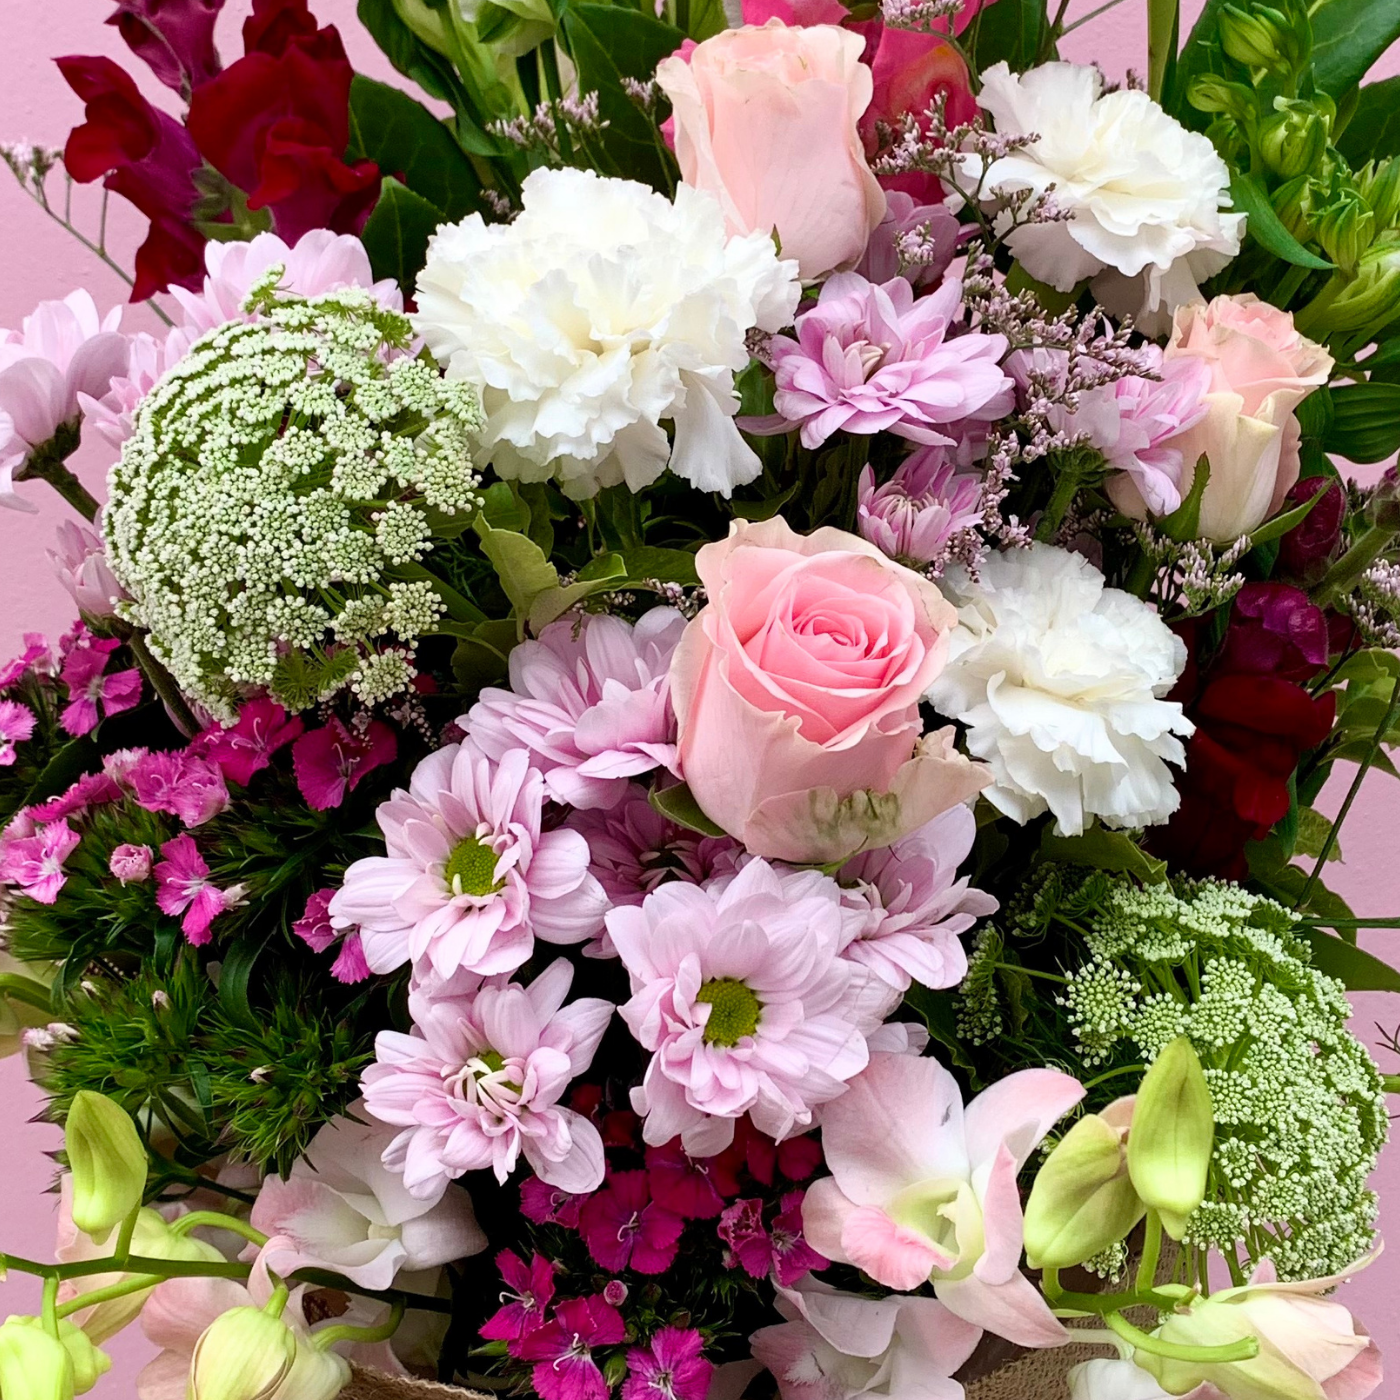 flower delivery Melbourne